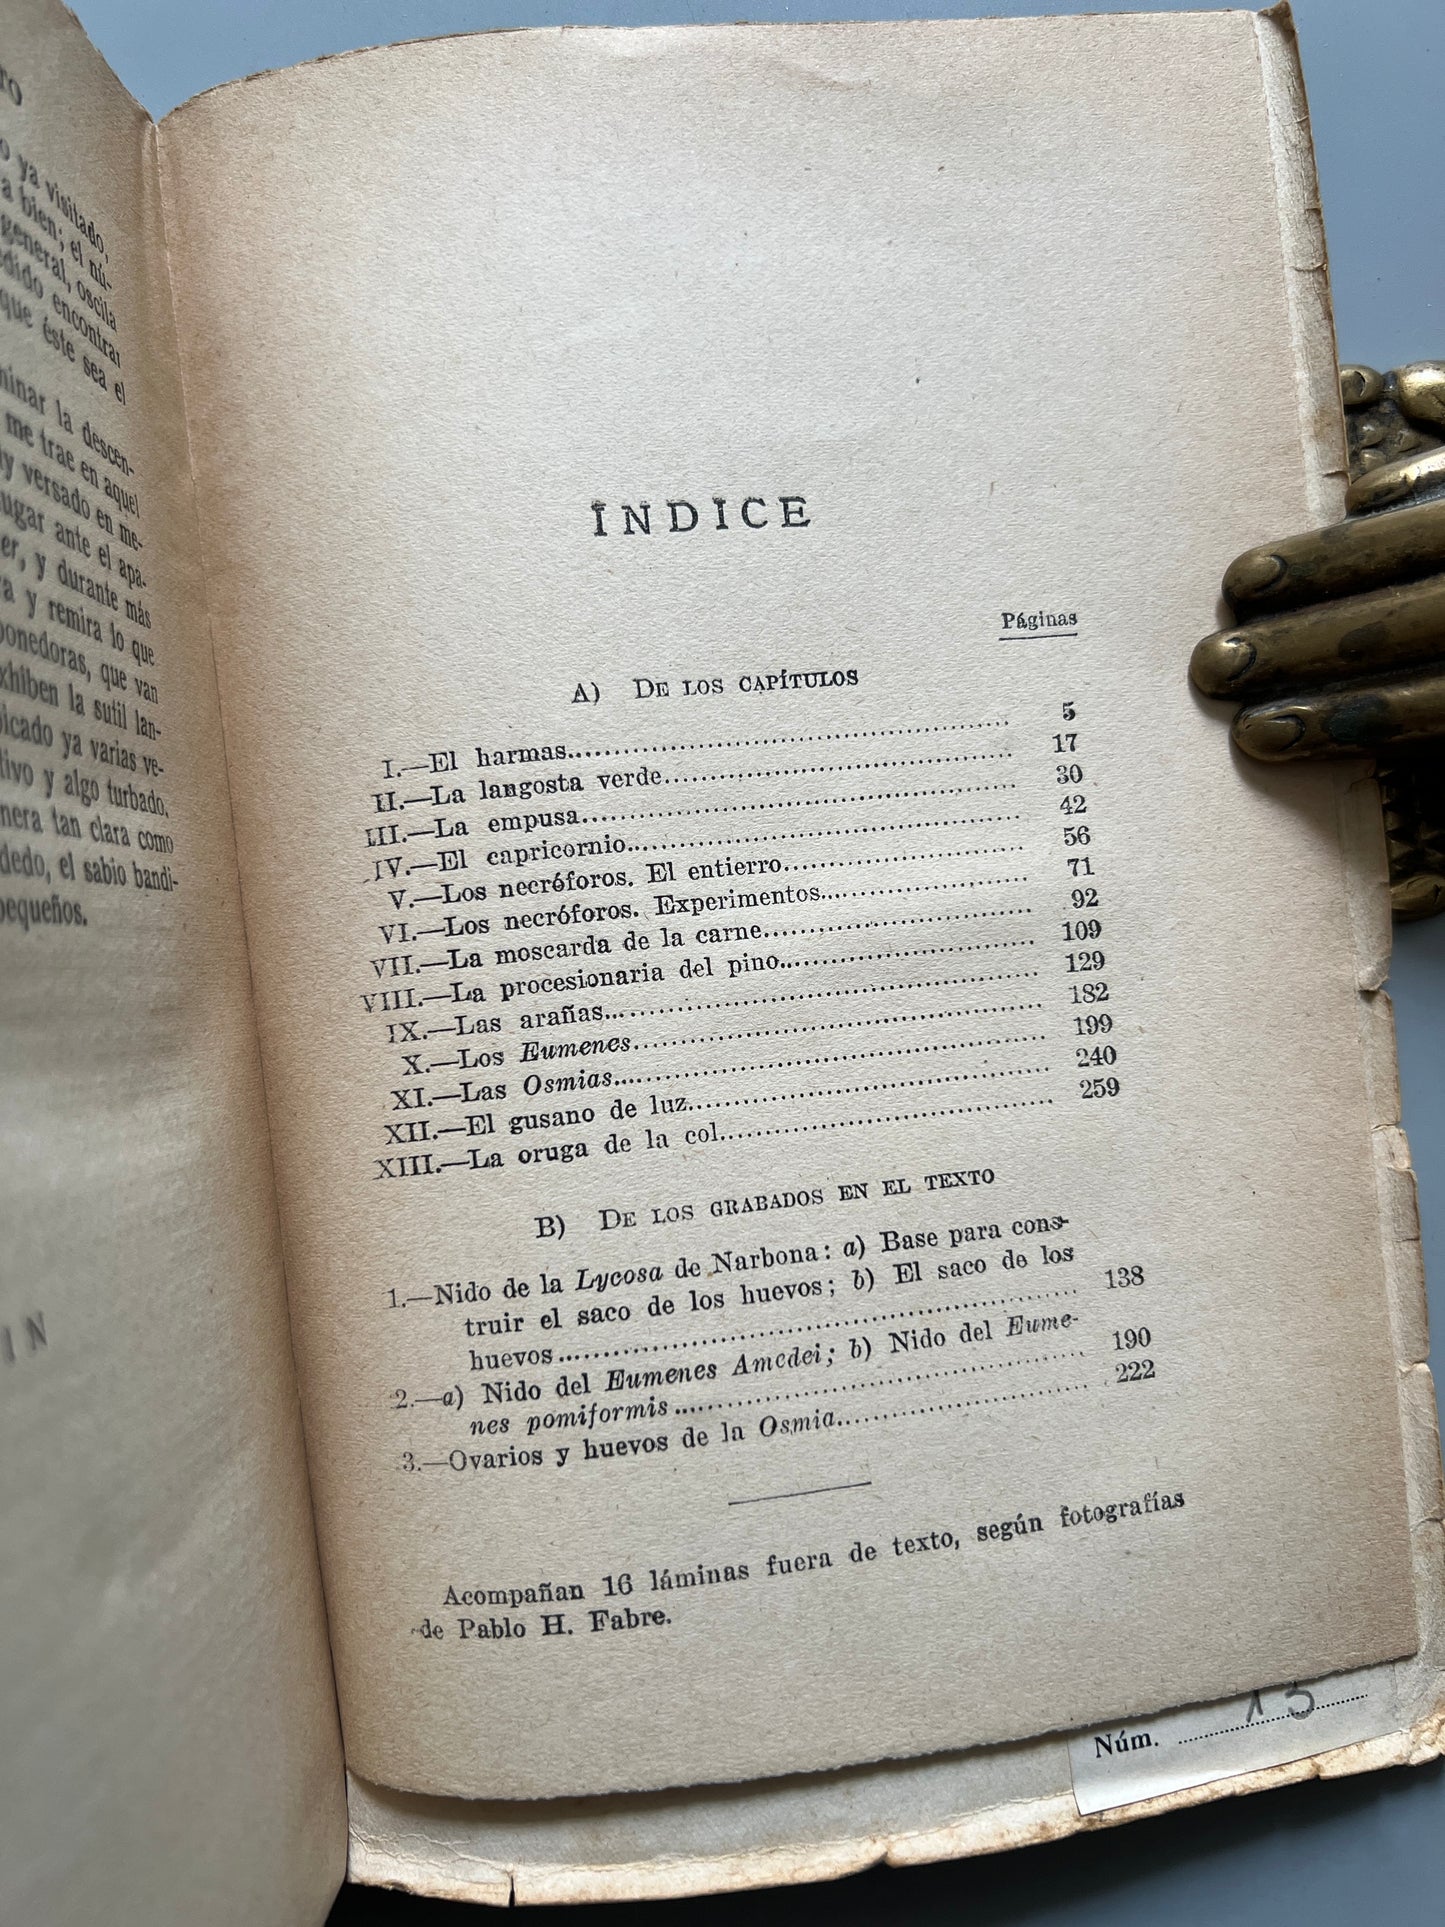 Maravillas del instinto en los insectos, J. H. Fabre - Espasa-Calpe, 1944